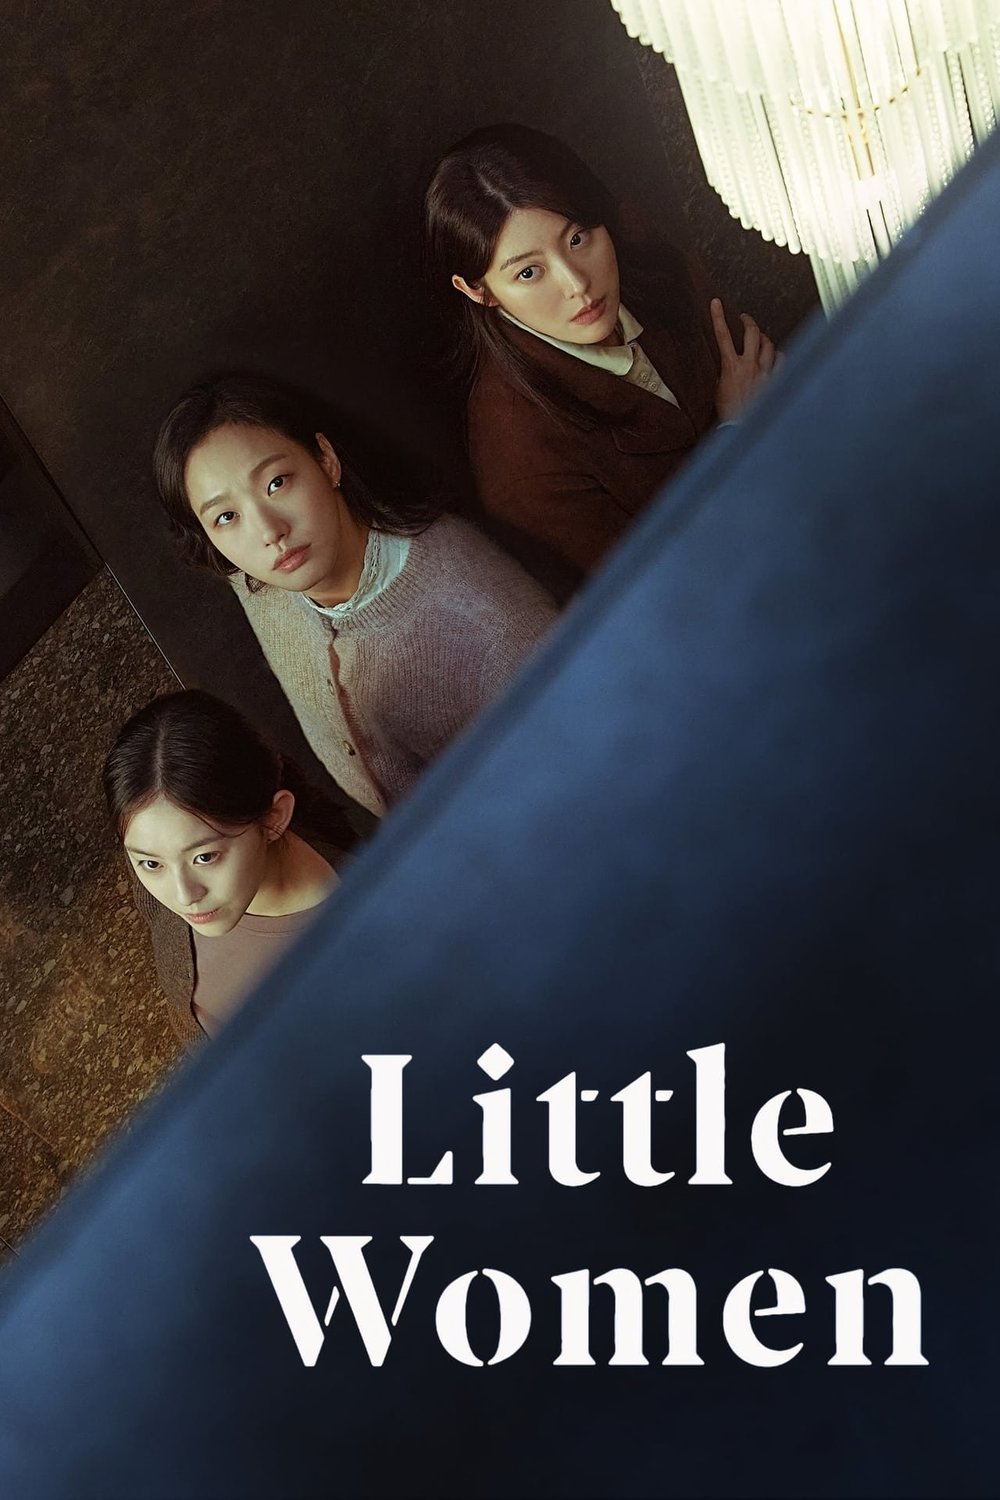 Korean poster of the movie Little Women